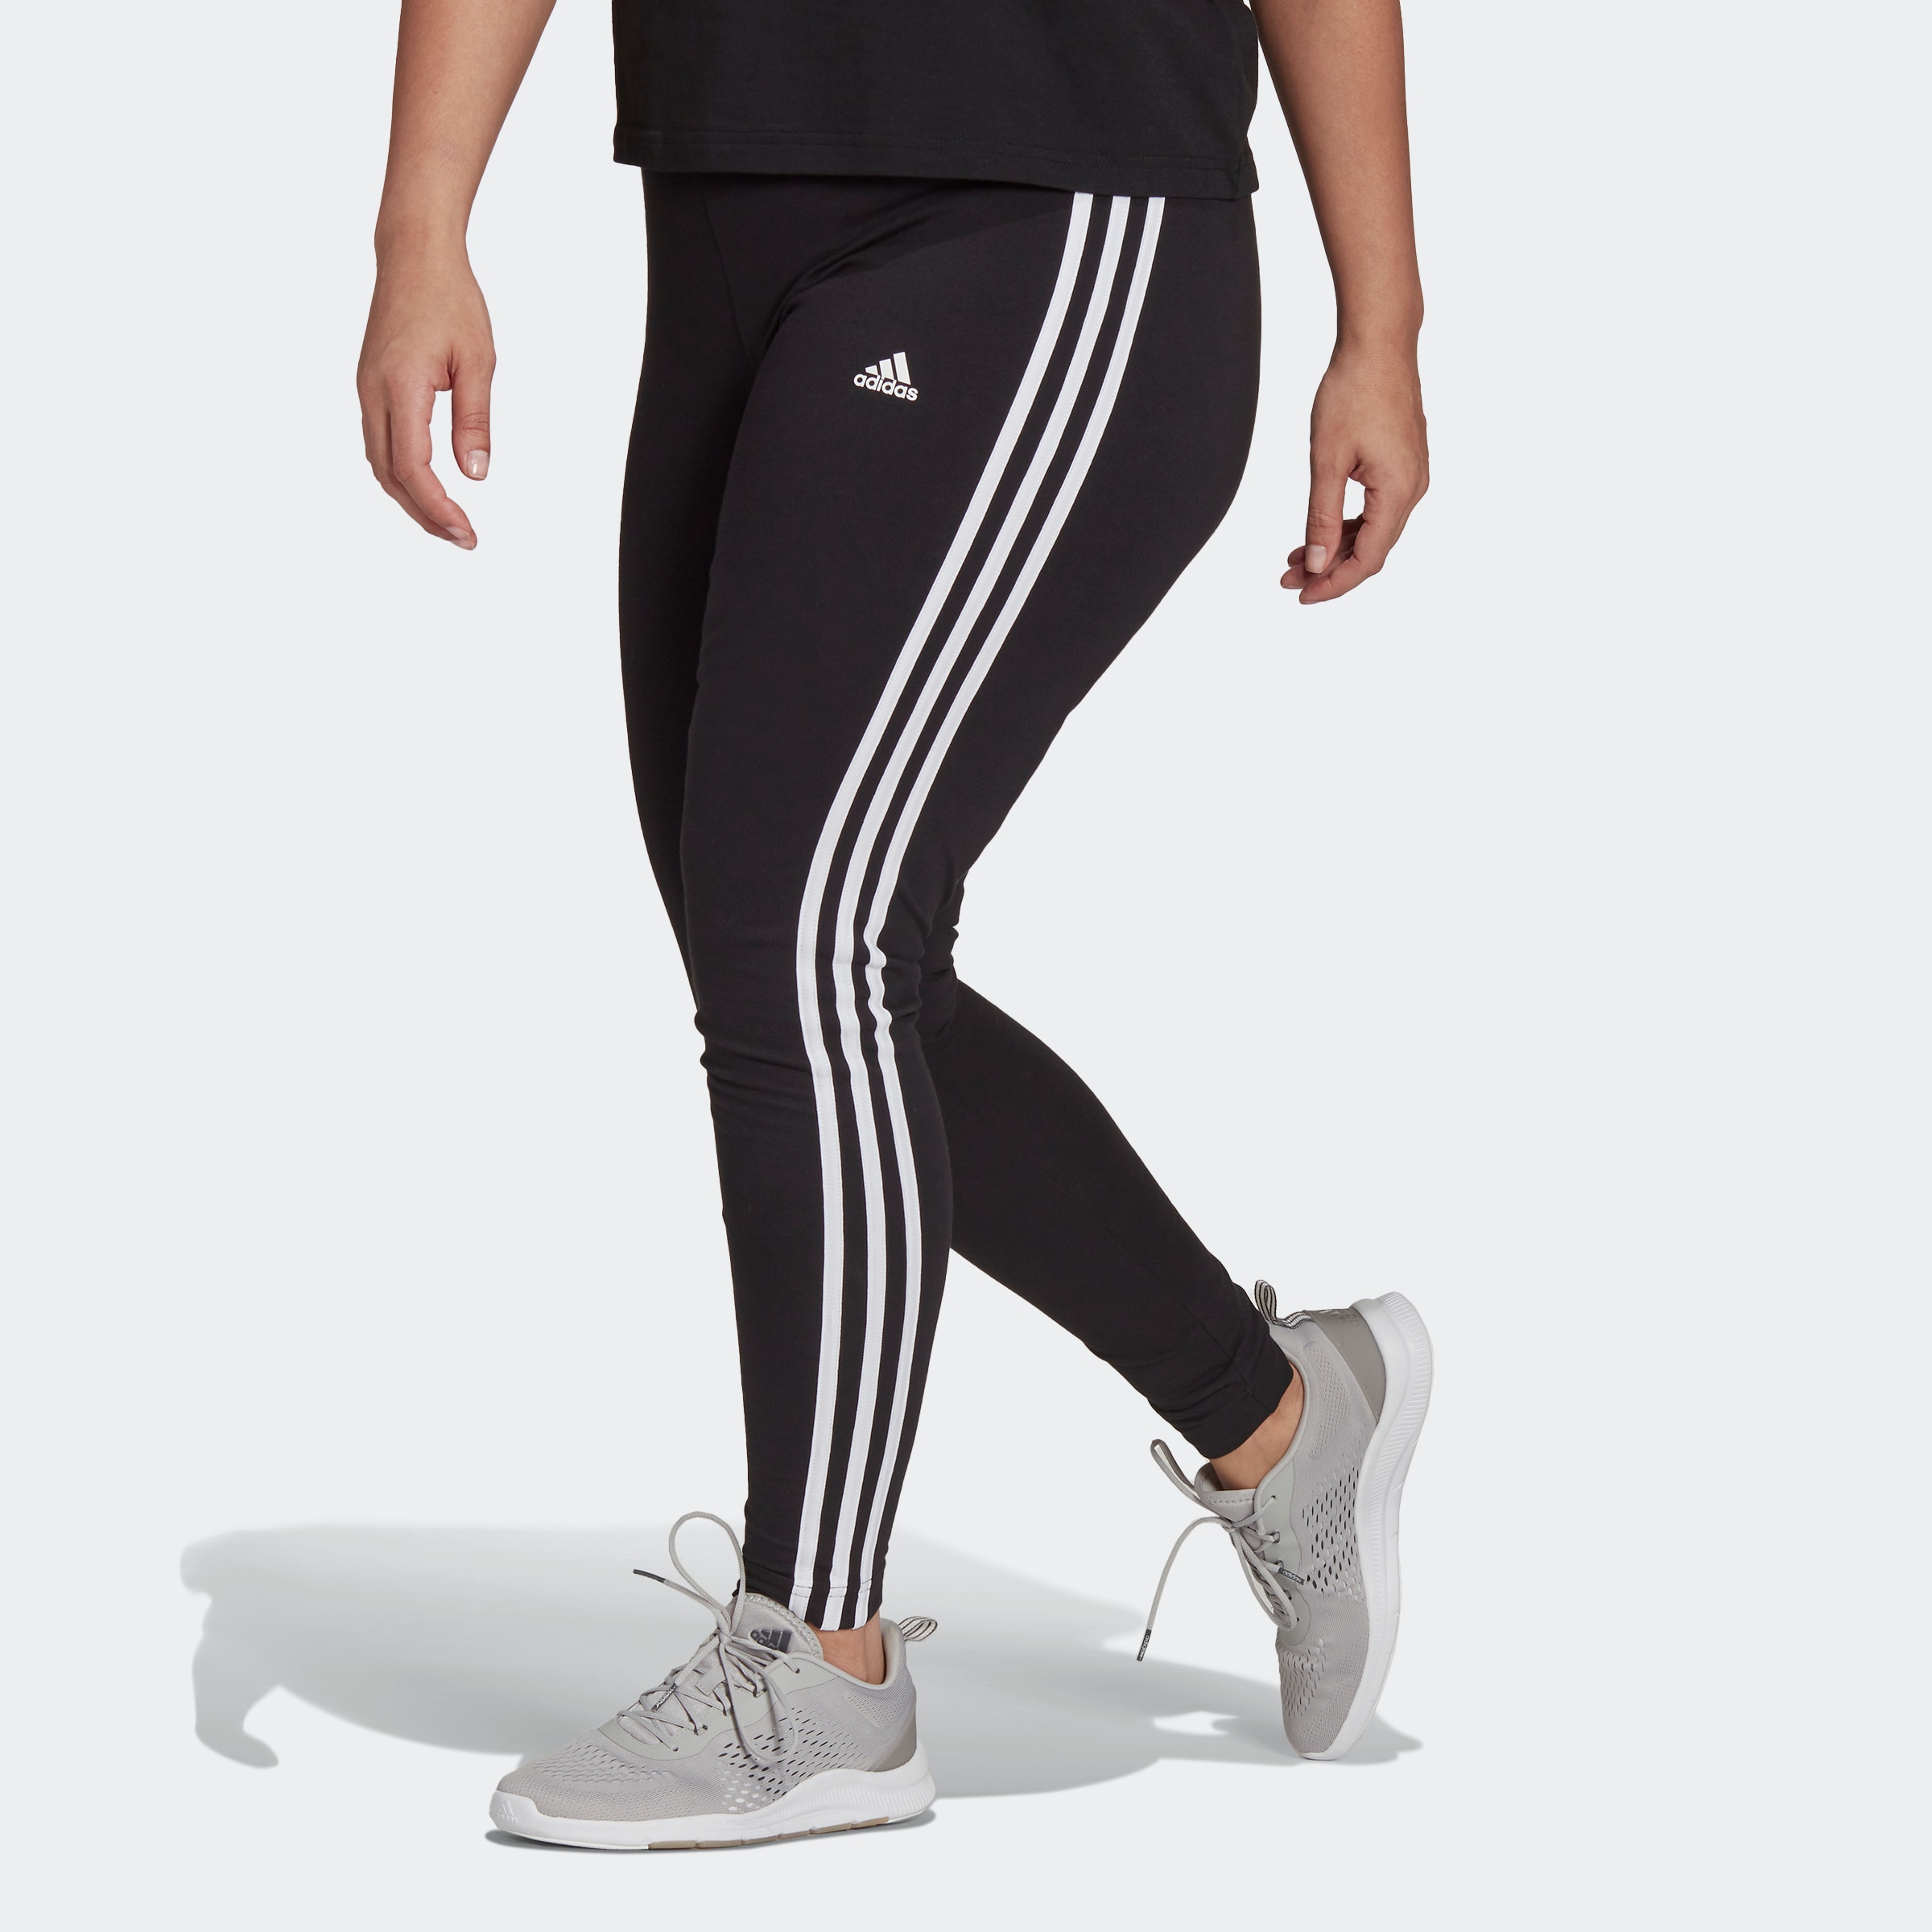 Adidas Leggings für lässige Looks im SALE